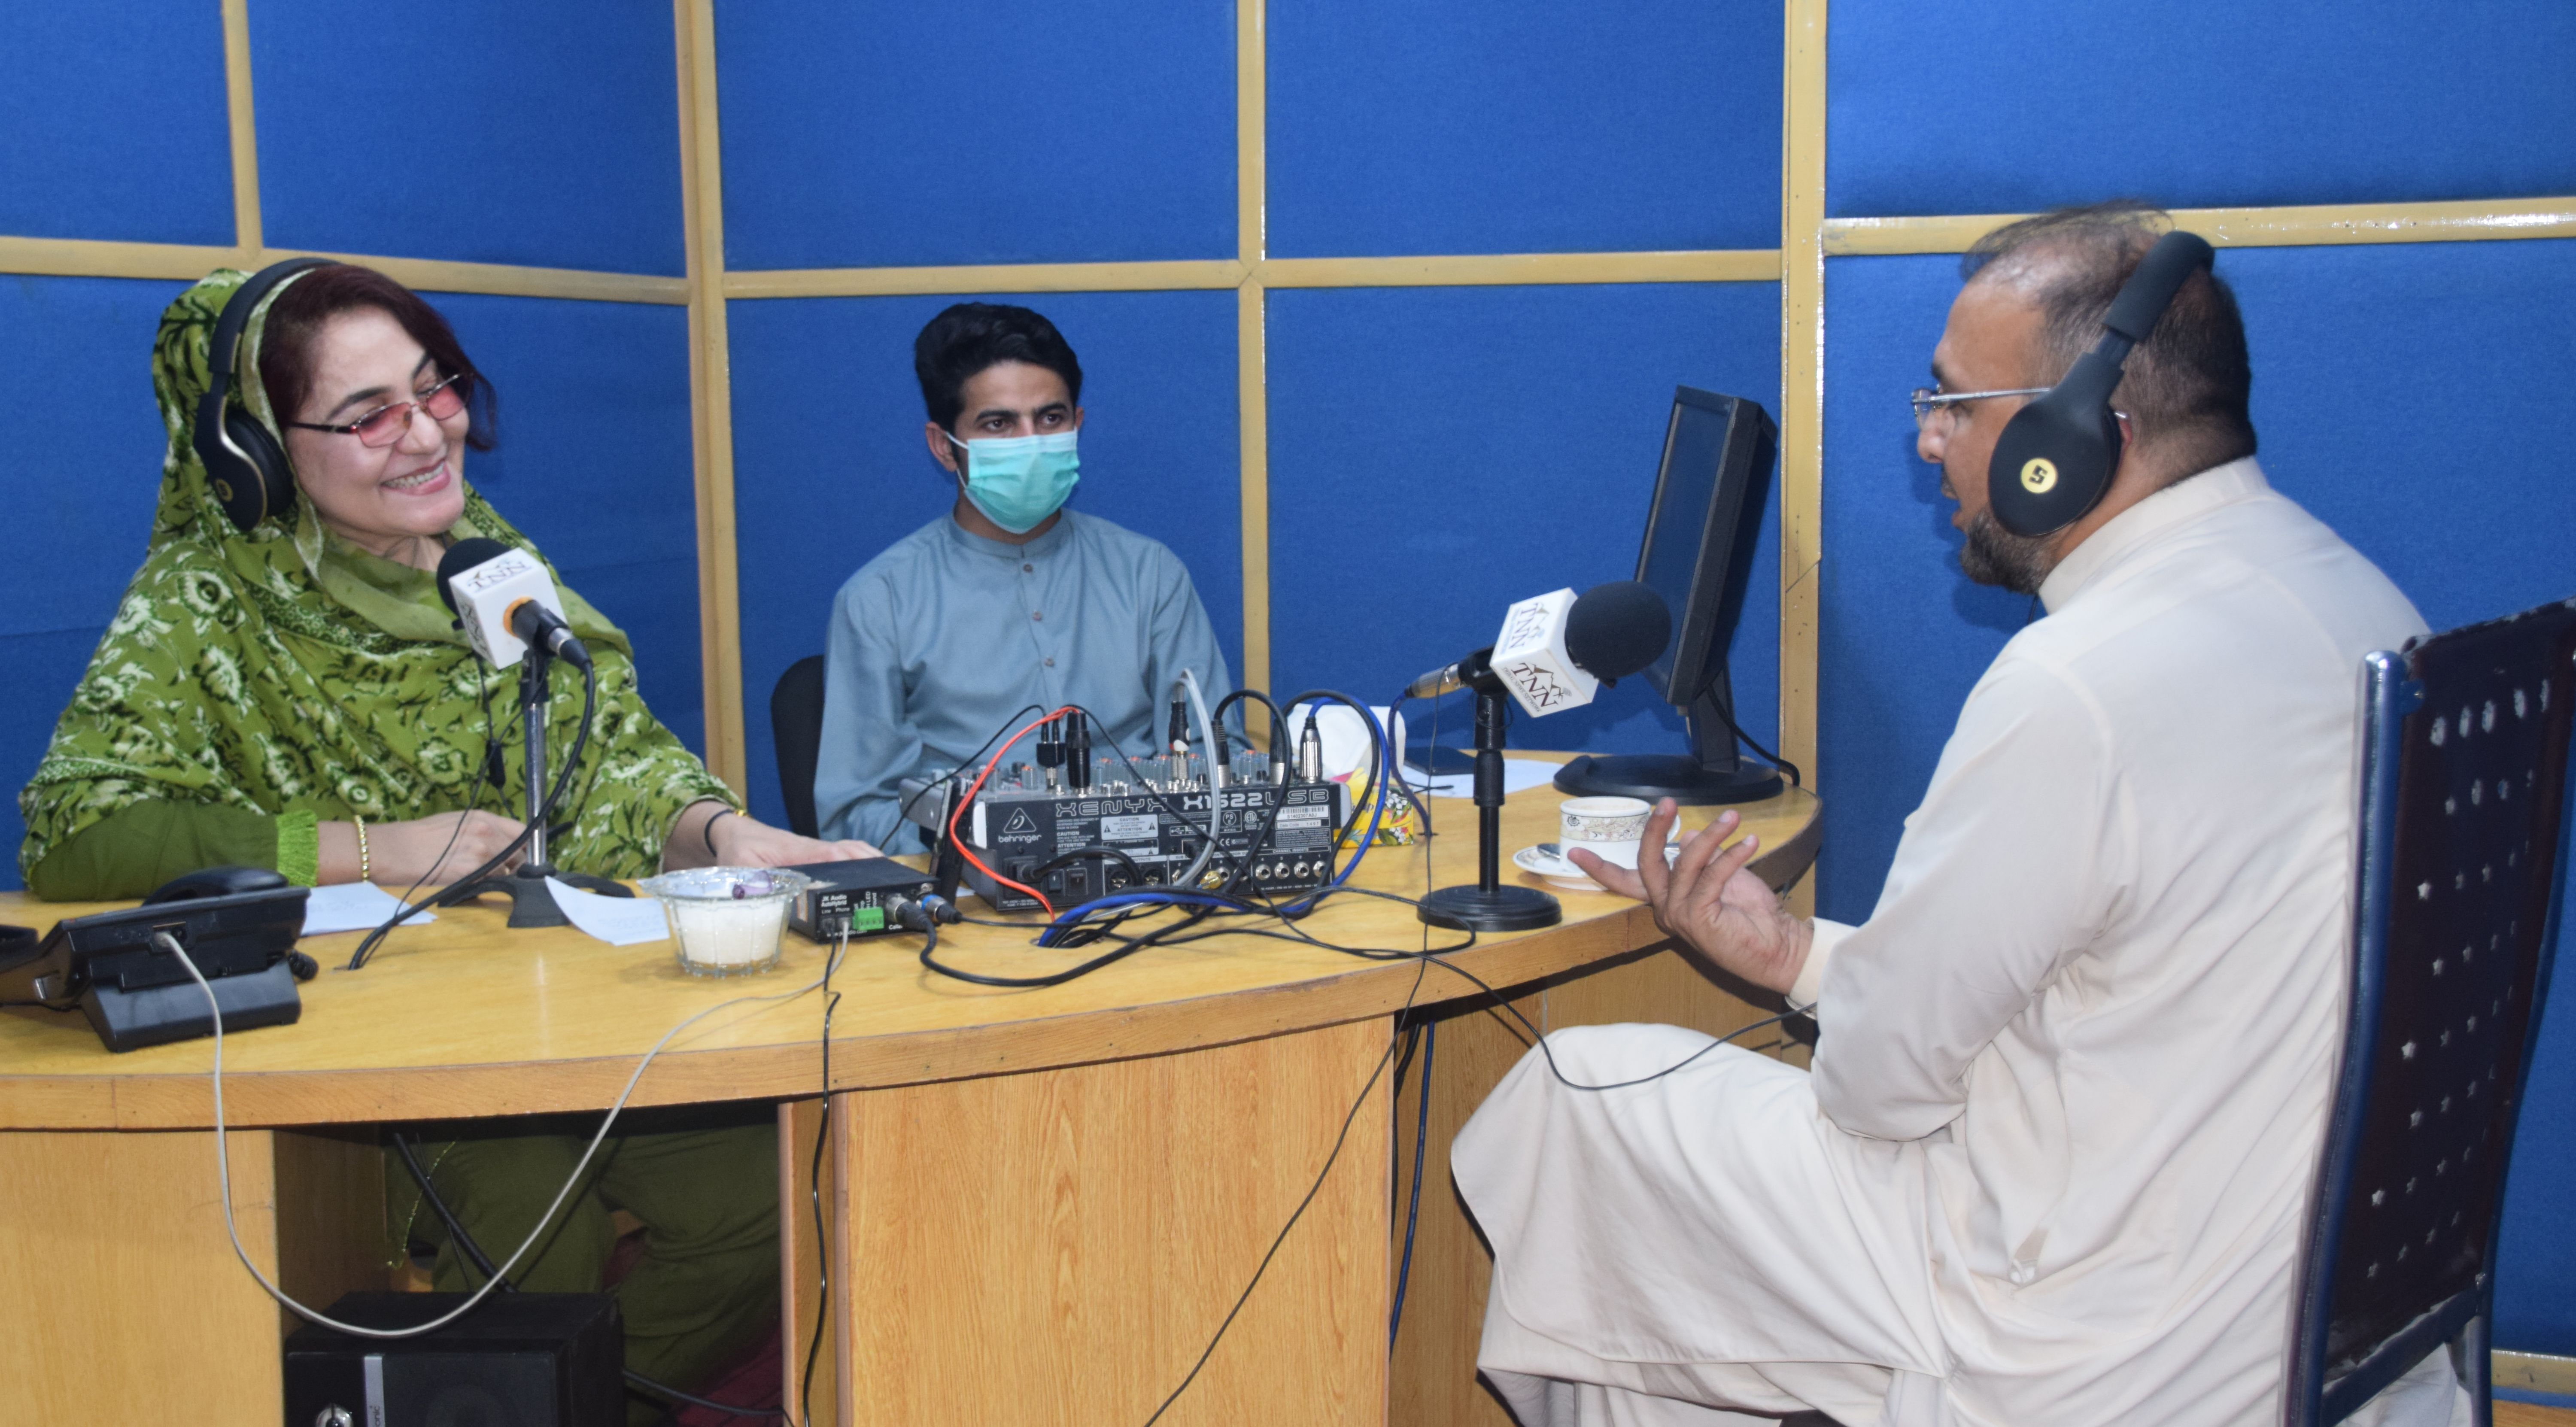 Medienberichterstattung über COVID-19 in Pakistan